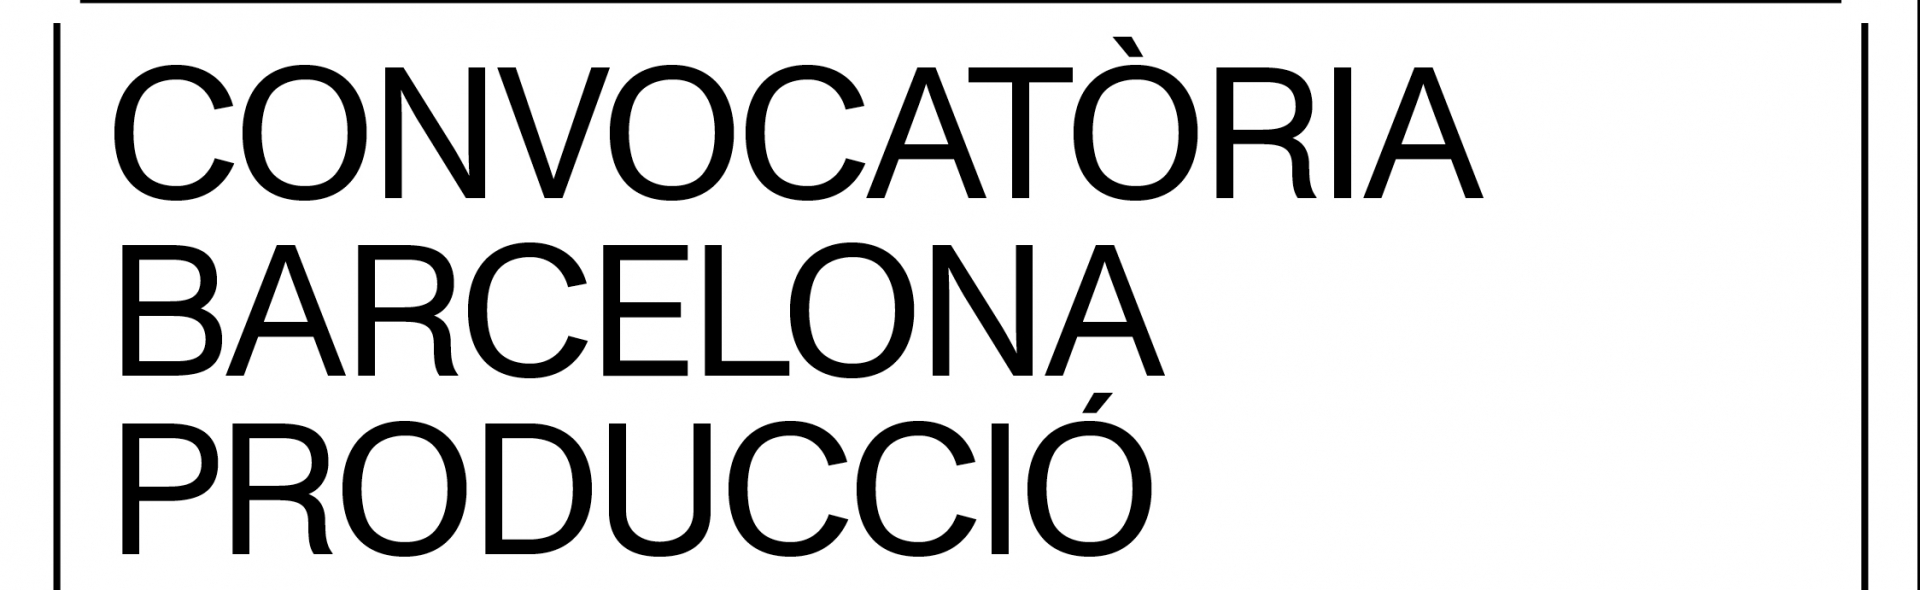 Convocatoria Barcelona Producció